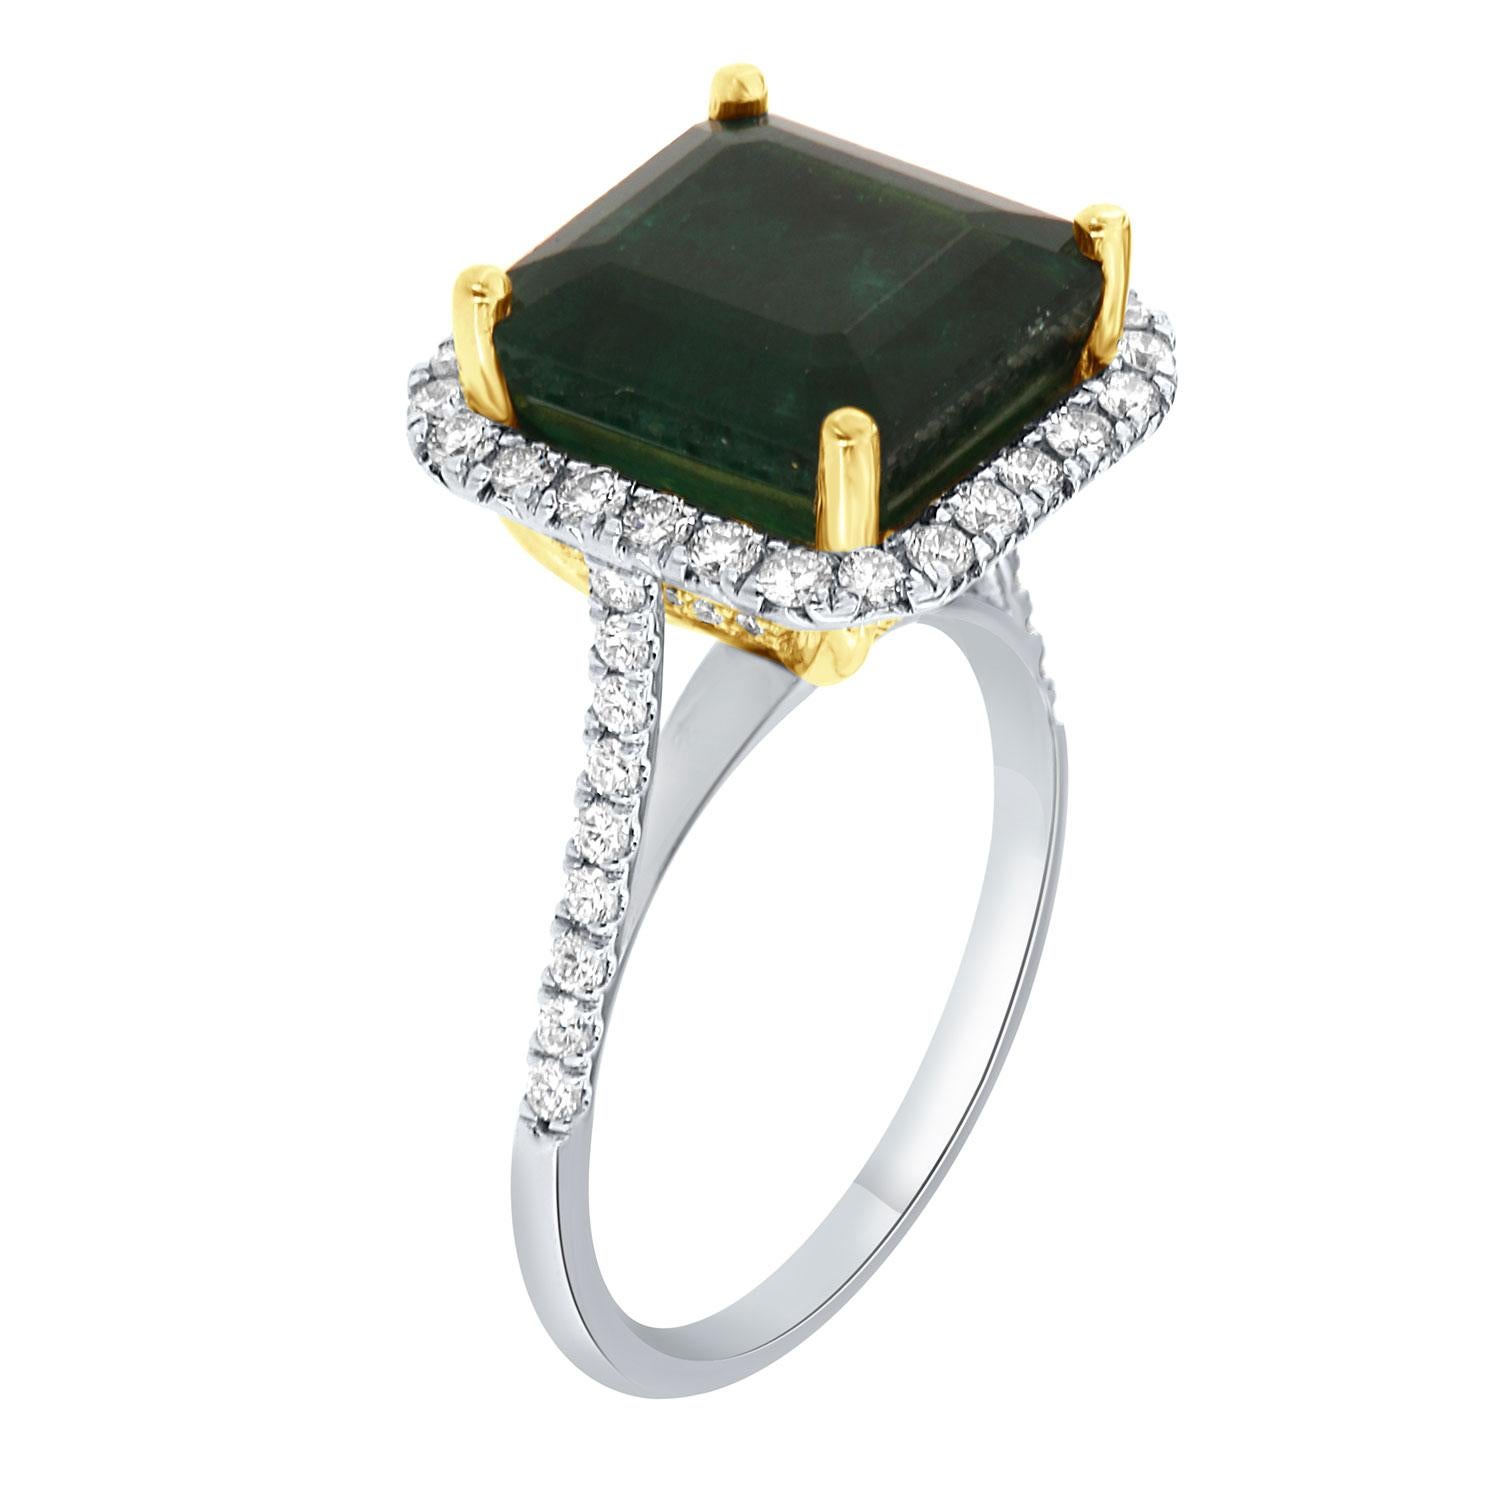 Dieser Ring aus 14-karätigem Weiß- und Gelbgold enthält einen GIA-zertifizierten 6,61-karätigen natürlichen grünen Smaragd im Asscher-Schliff aus Sambia. Ein Halo aus runden Brillanten umgibt den Smaragd. Drei Reihen von Diamanten in